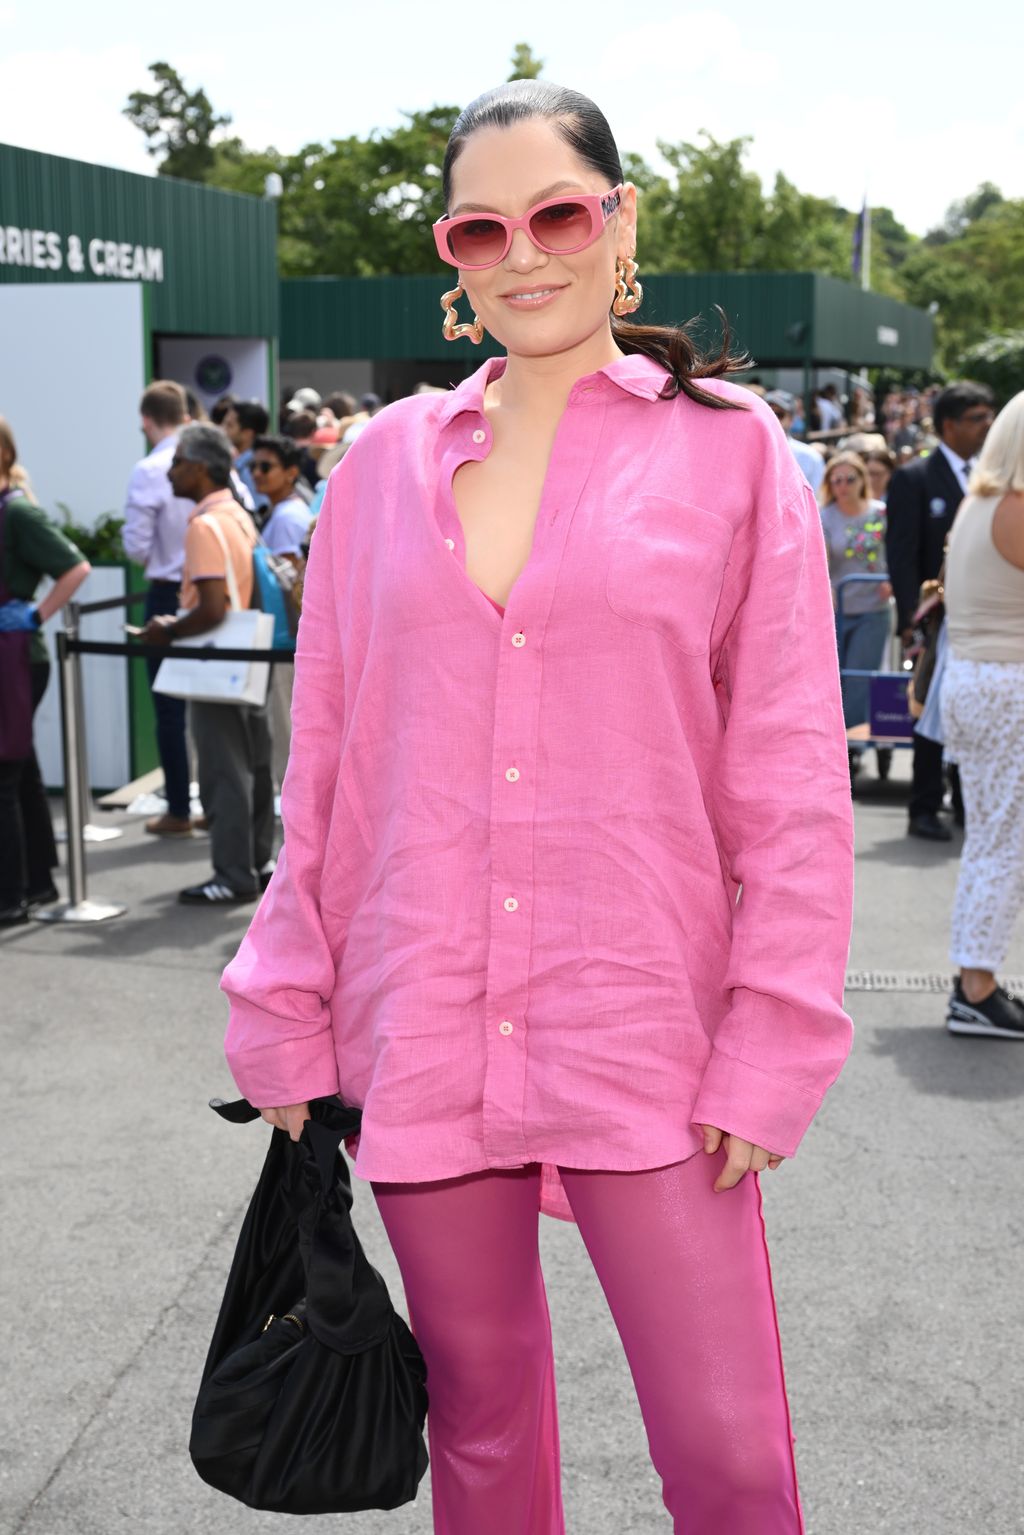 Singer Jessie J wearing pink at wimbledon 